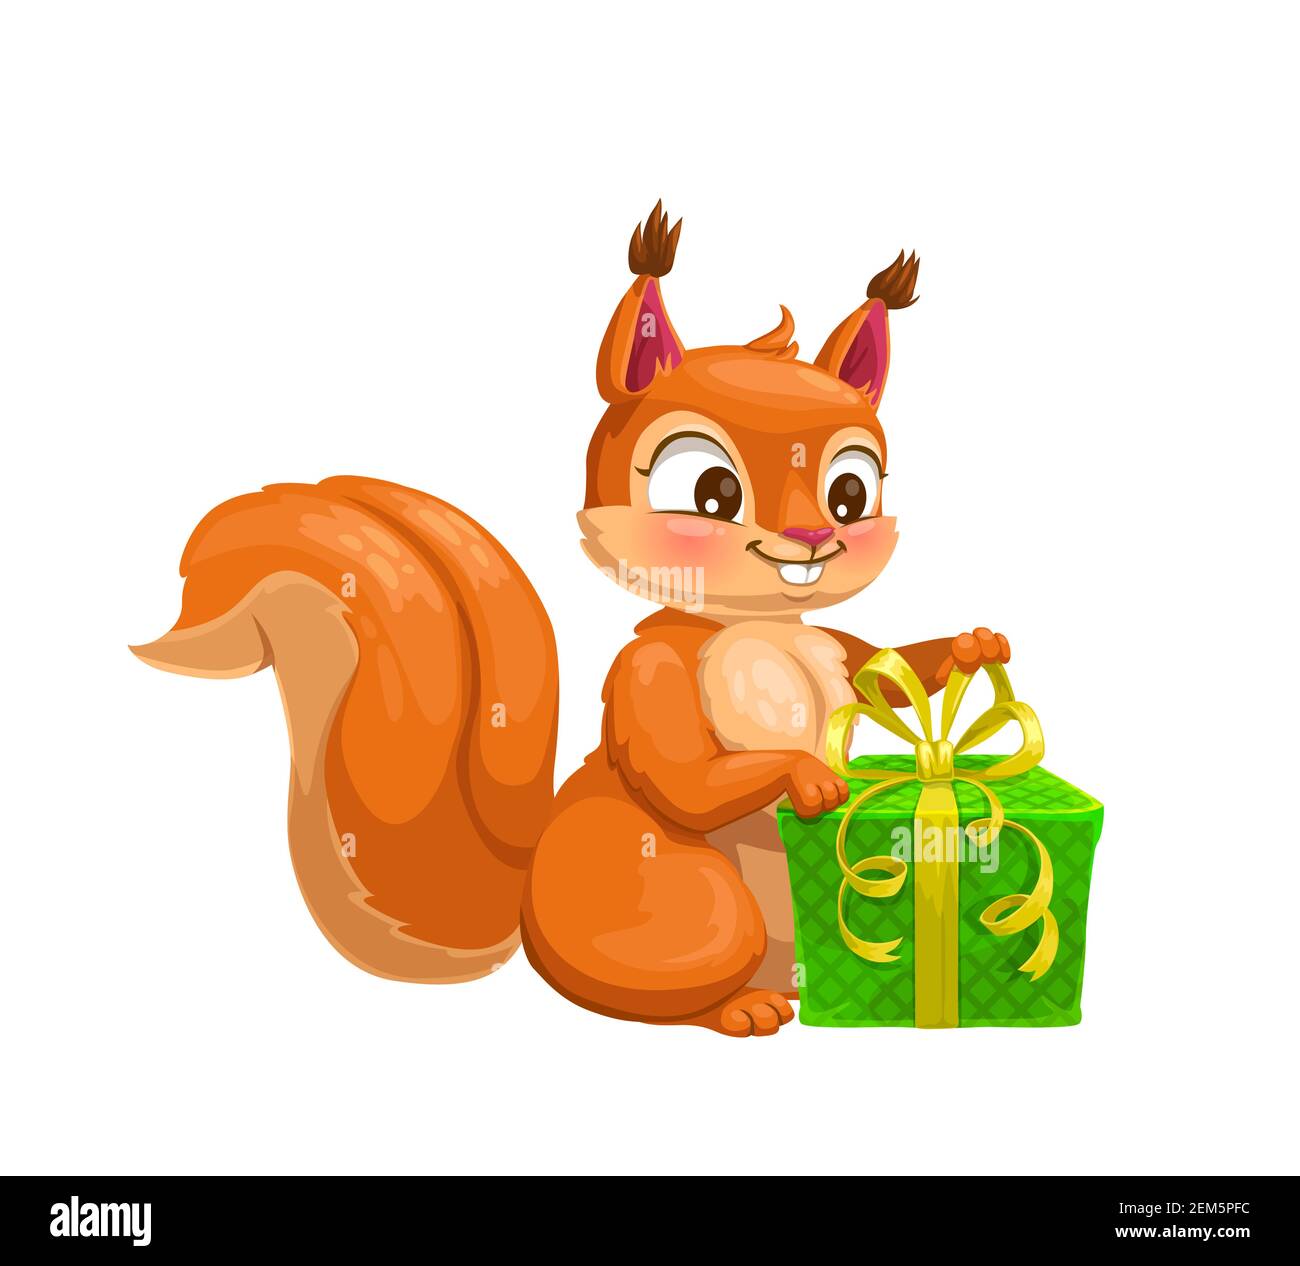 Écureuil avec boîte cadeau adorable personnage de dessin animé. Animal boisé vectoriel en fourrure rouge, queue molletonnée et présente, orné de rubans et d'un noeud. Faune ma Illustration de Vecteur